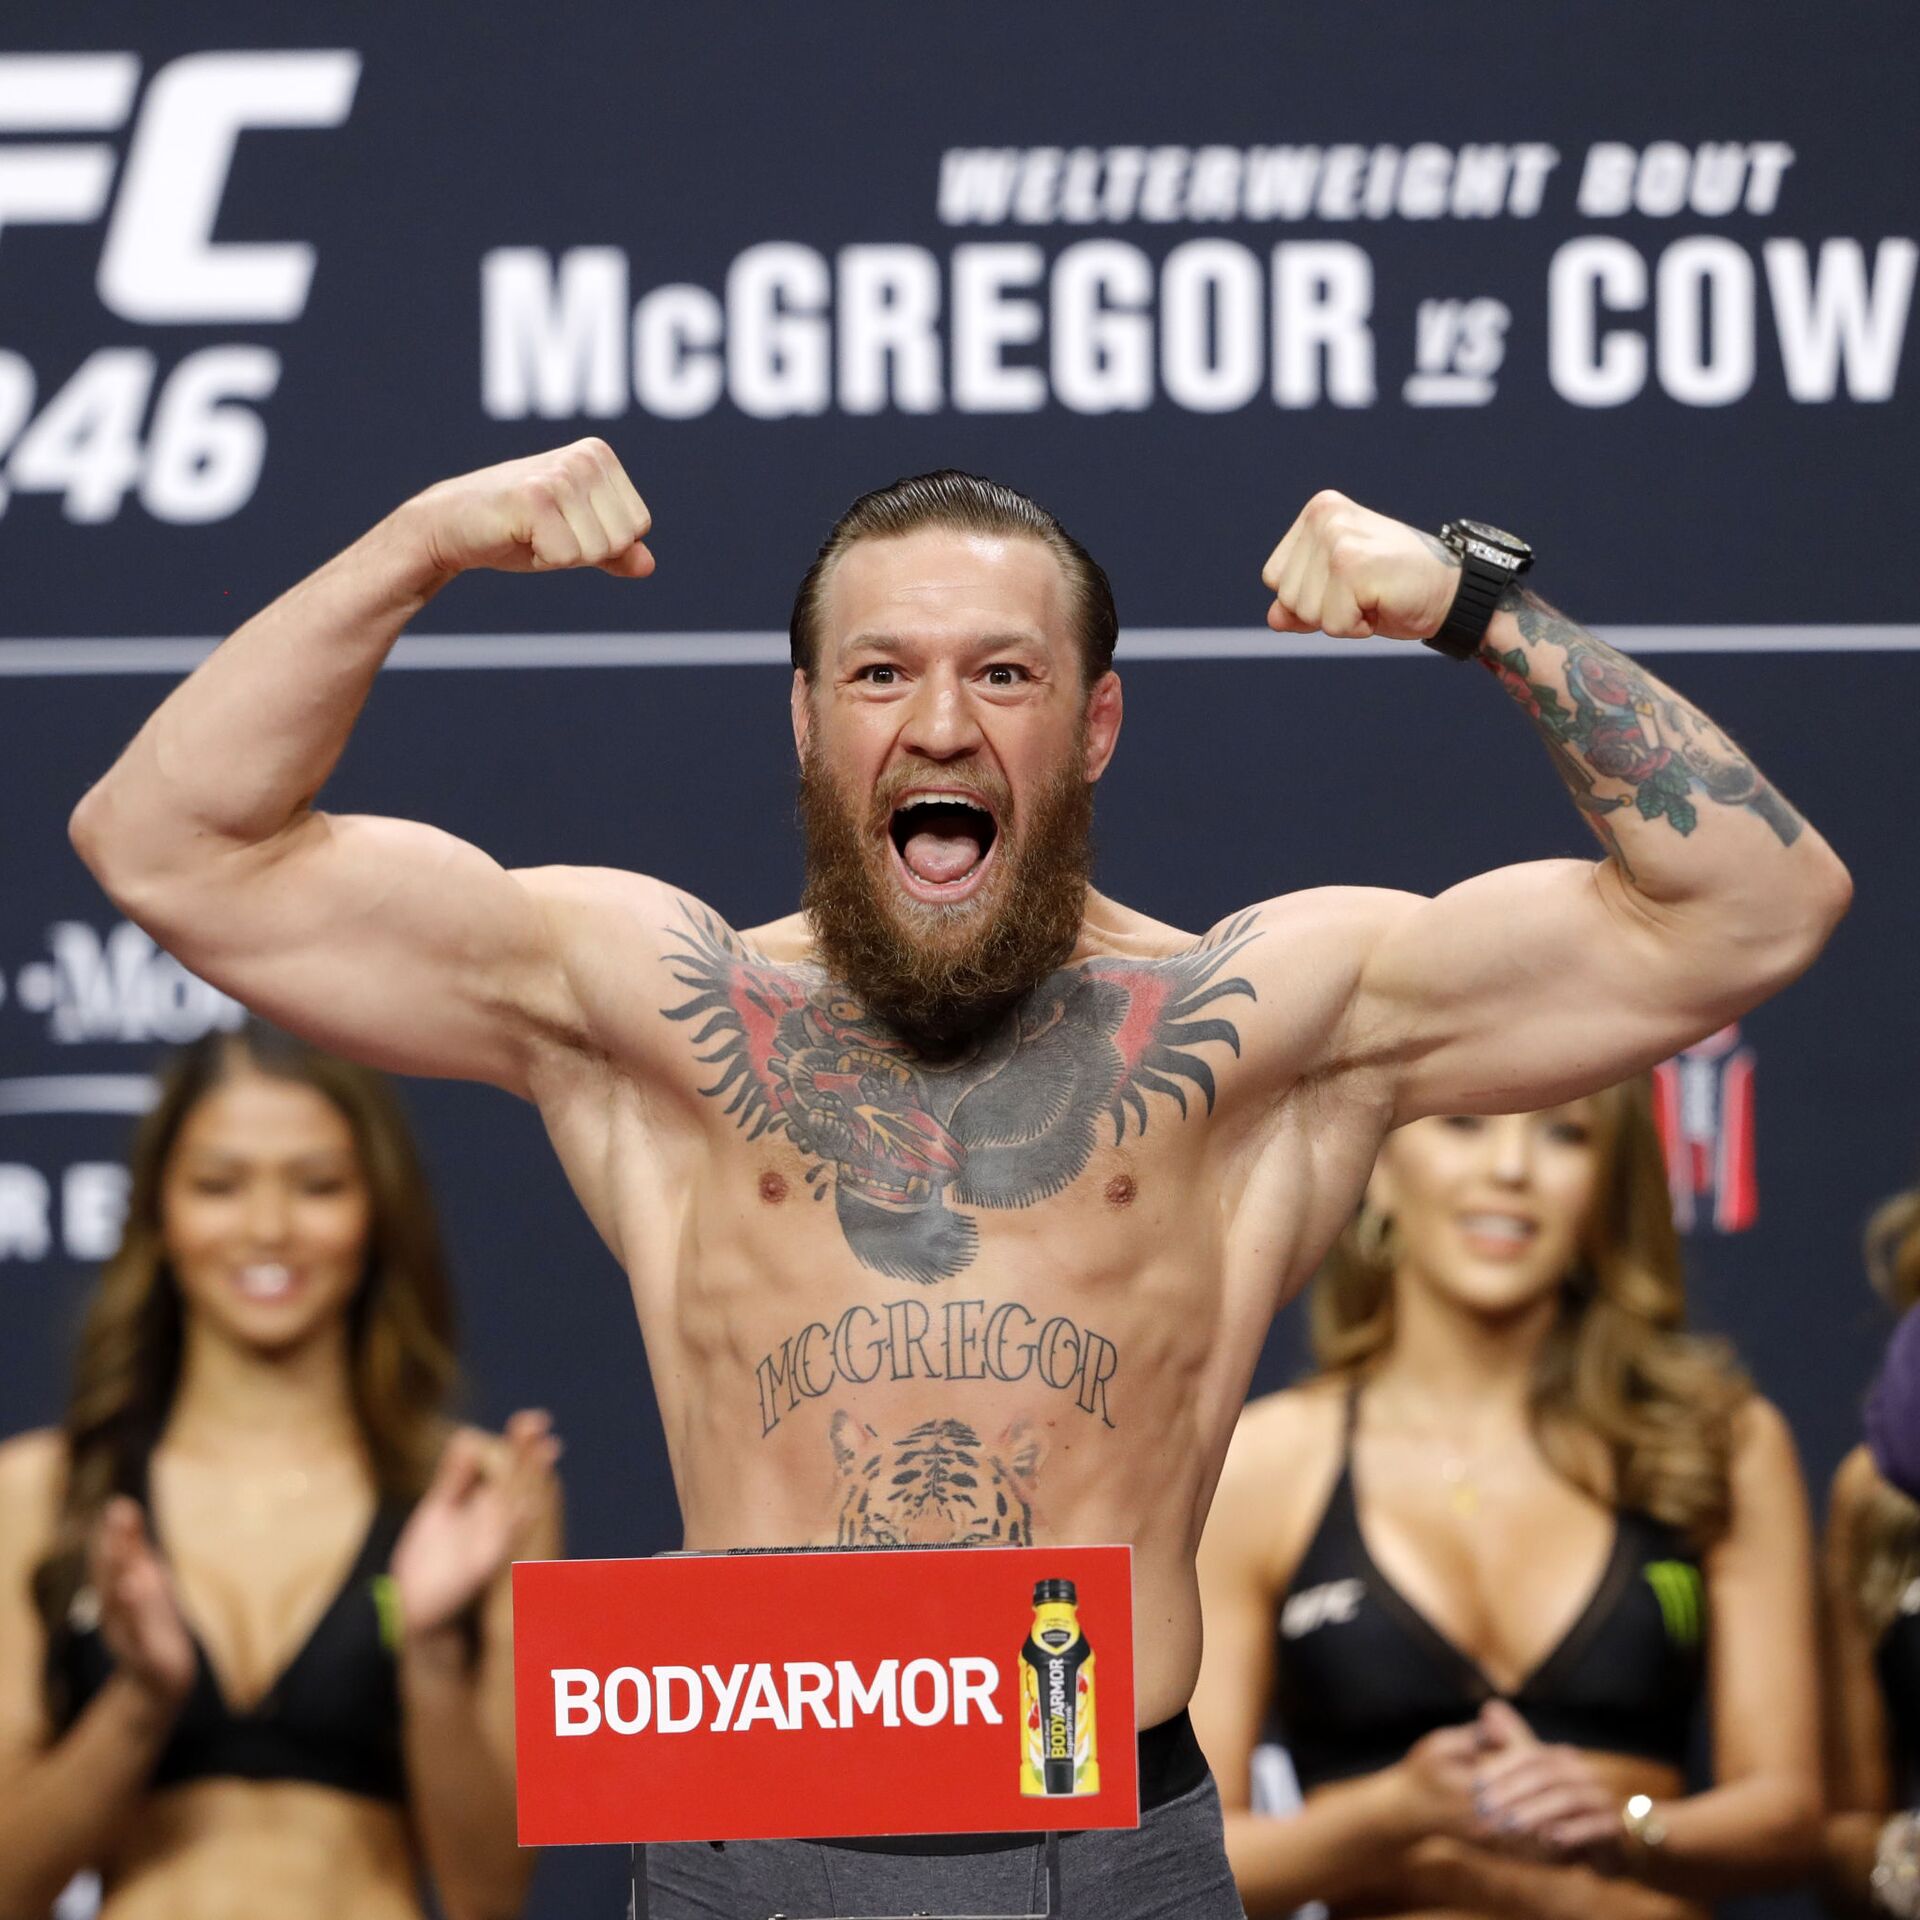 UFC: Conor McGregor transformation photo sparks debate